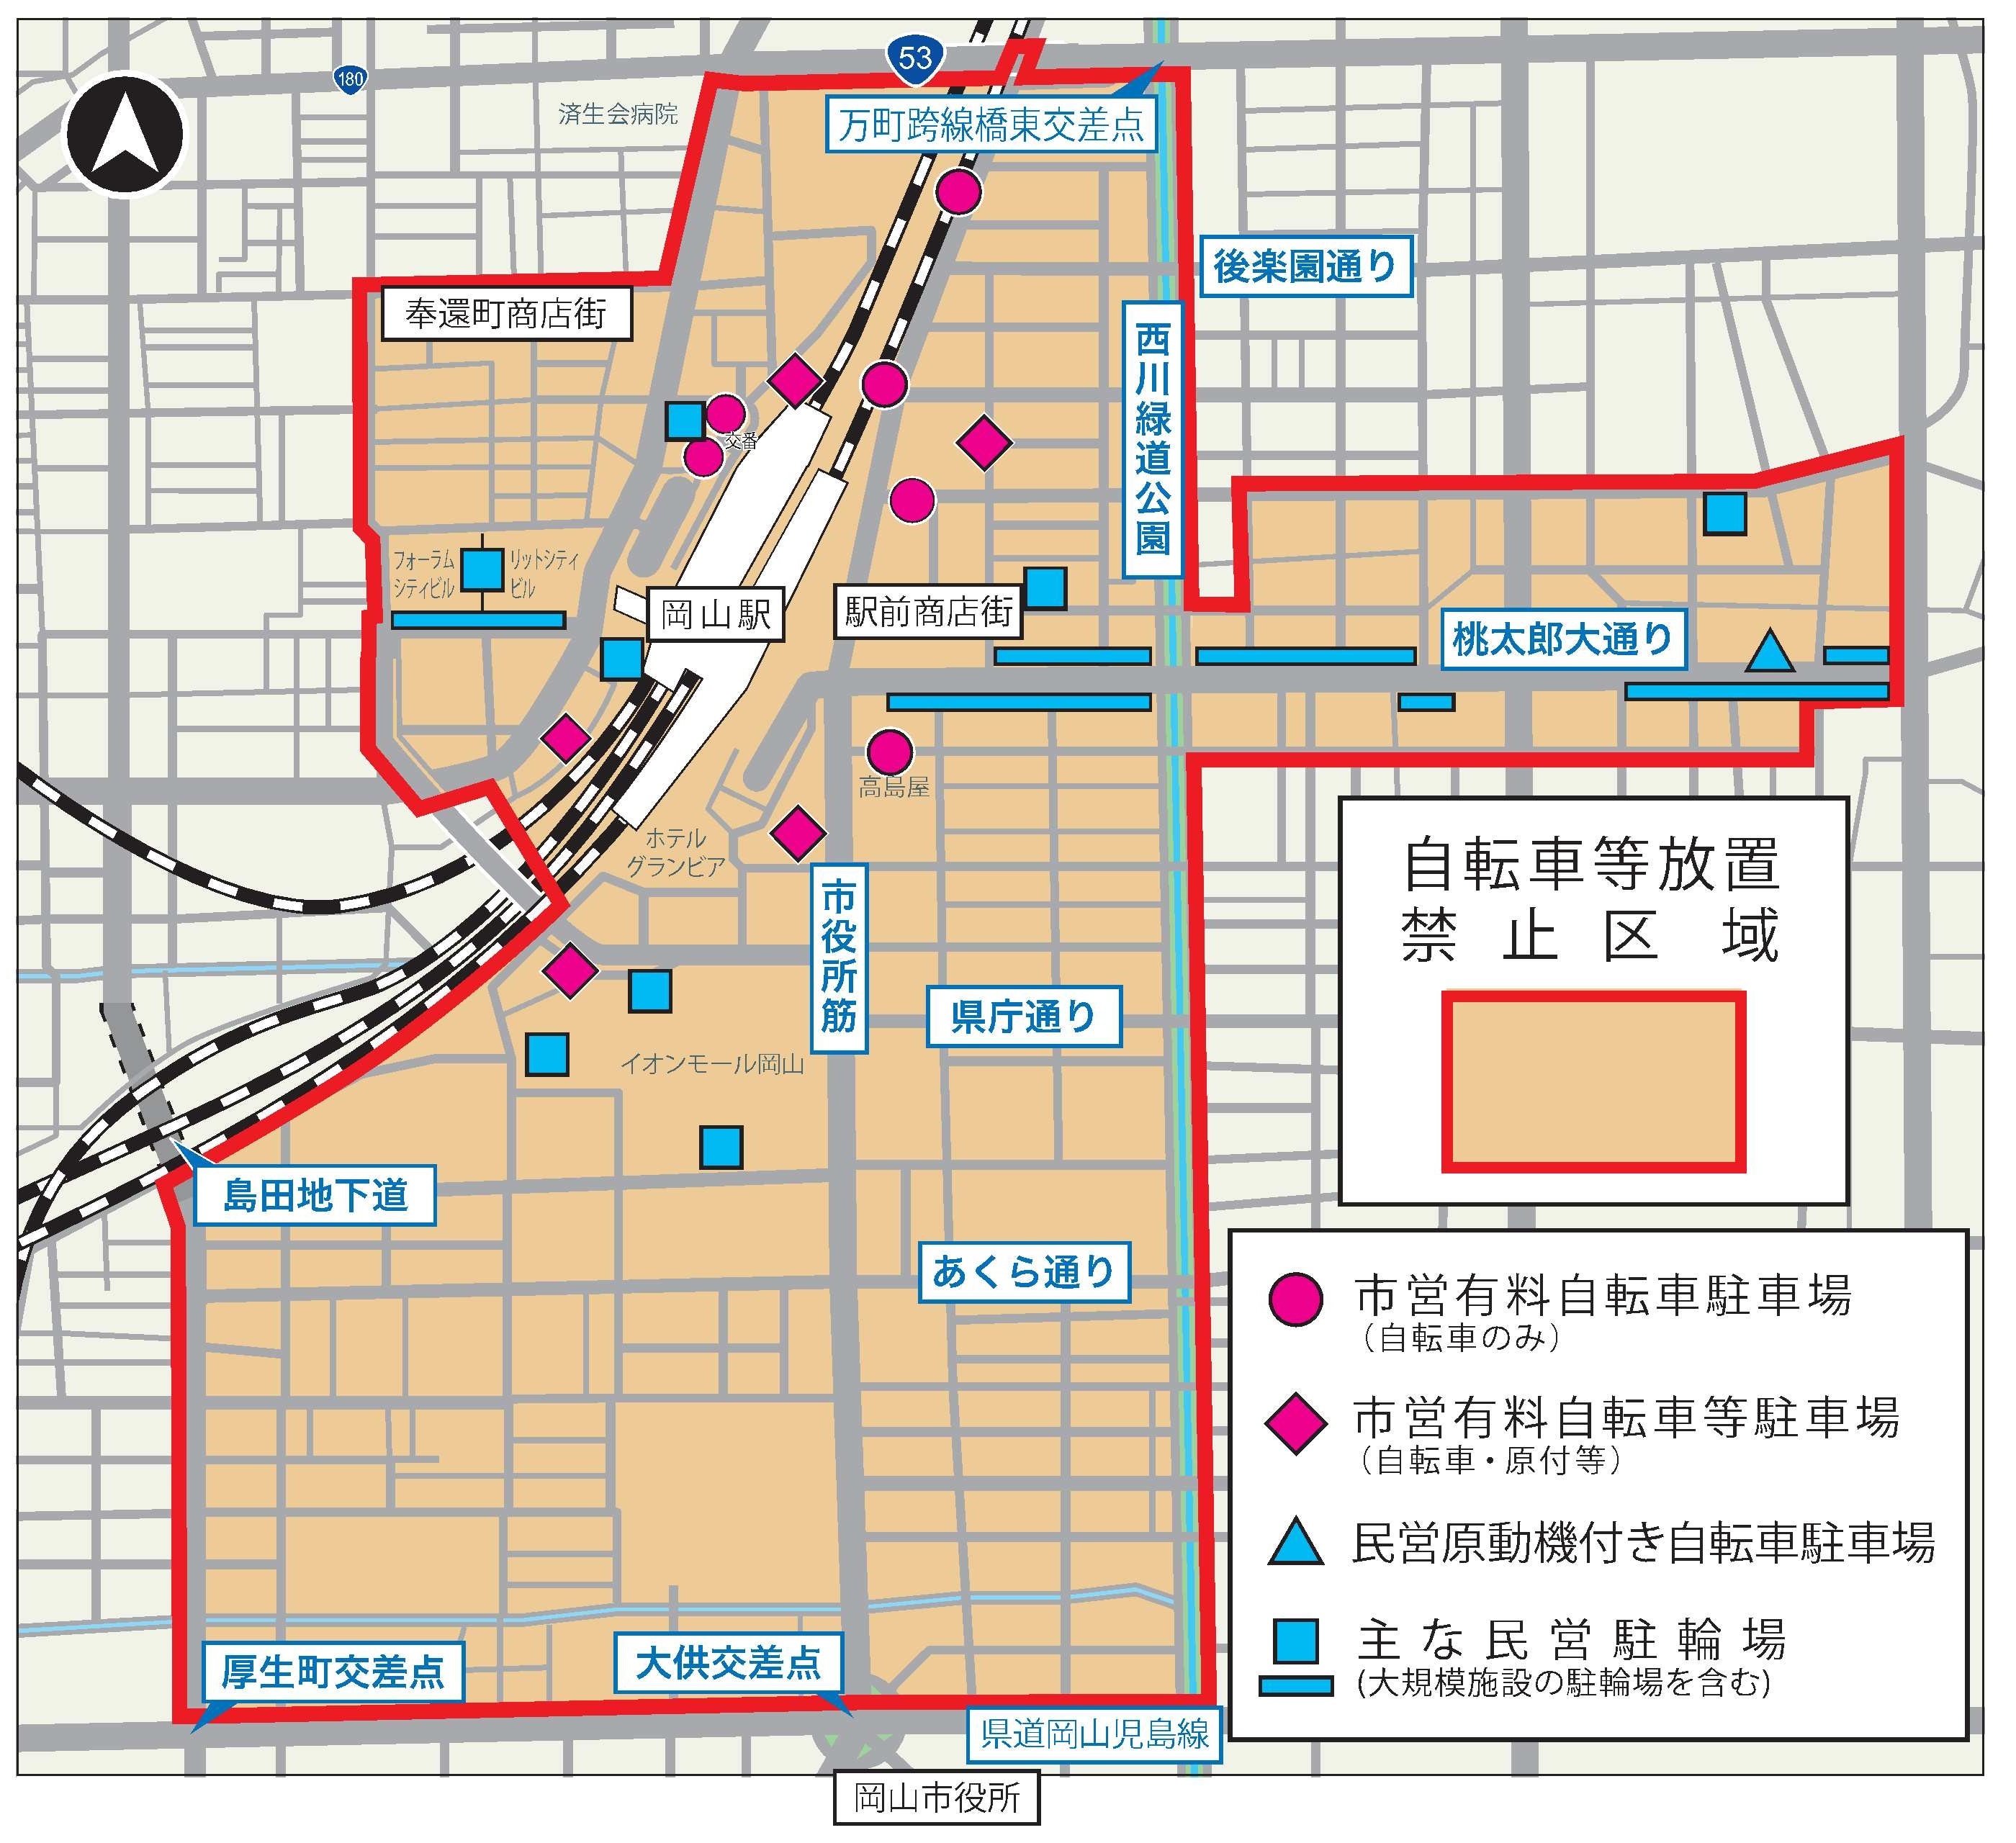 岡山駅周辺の自転車等放置禁止区域図